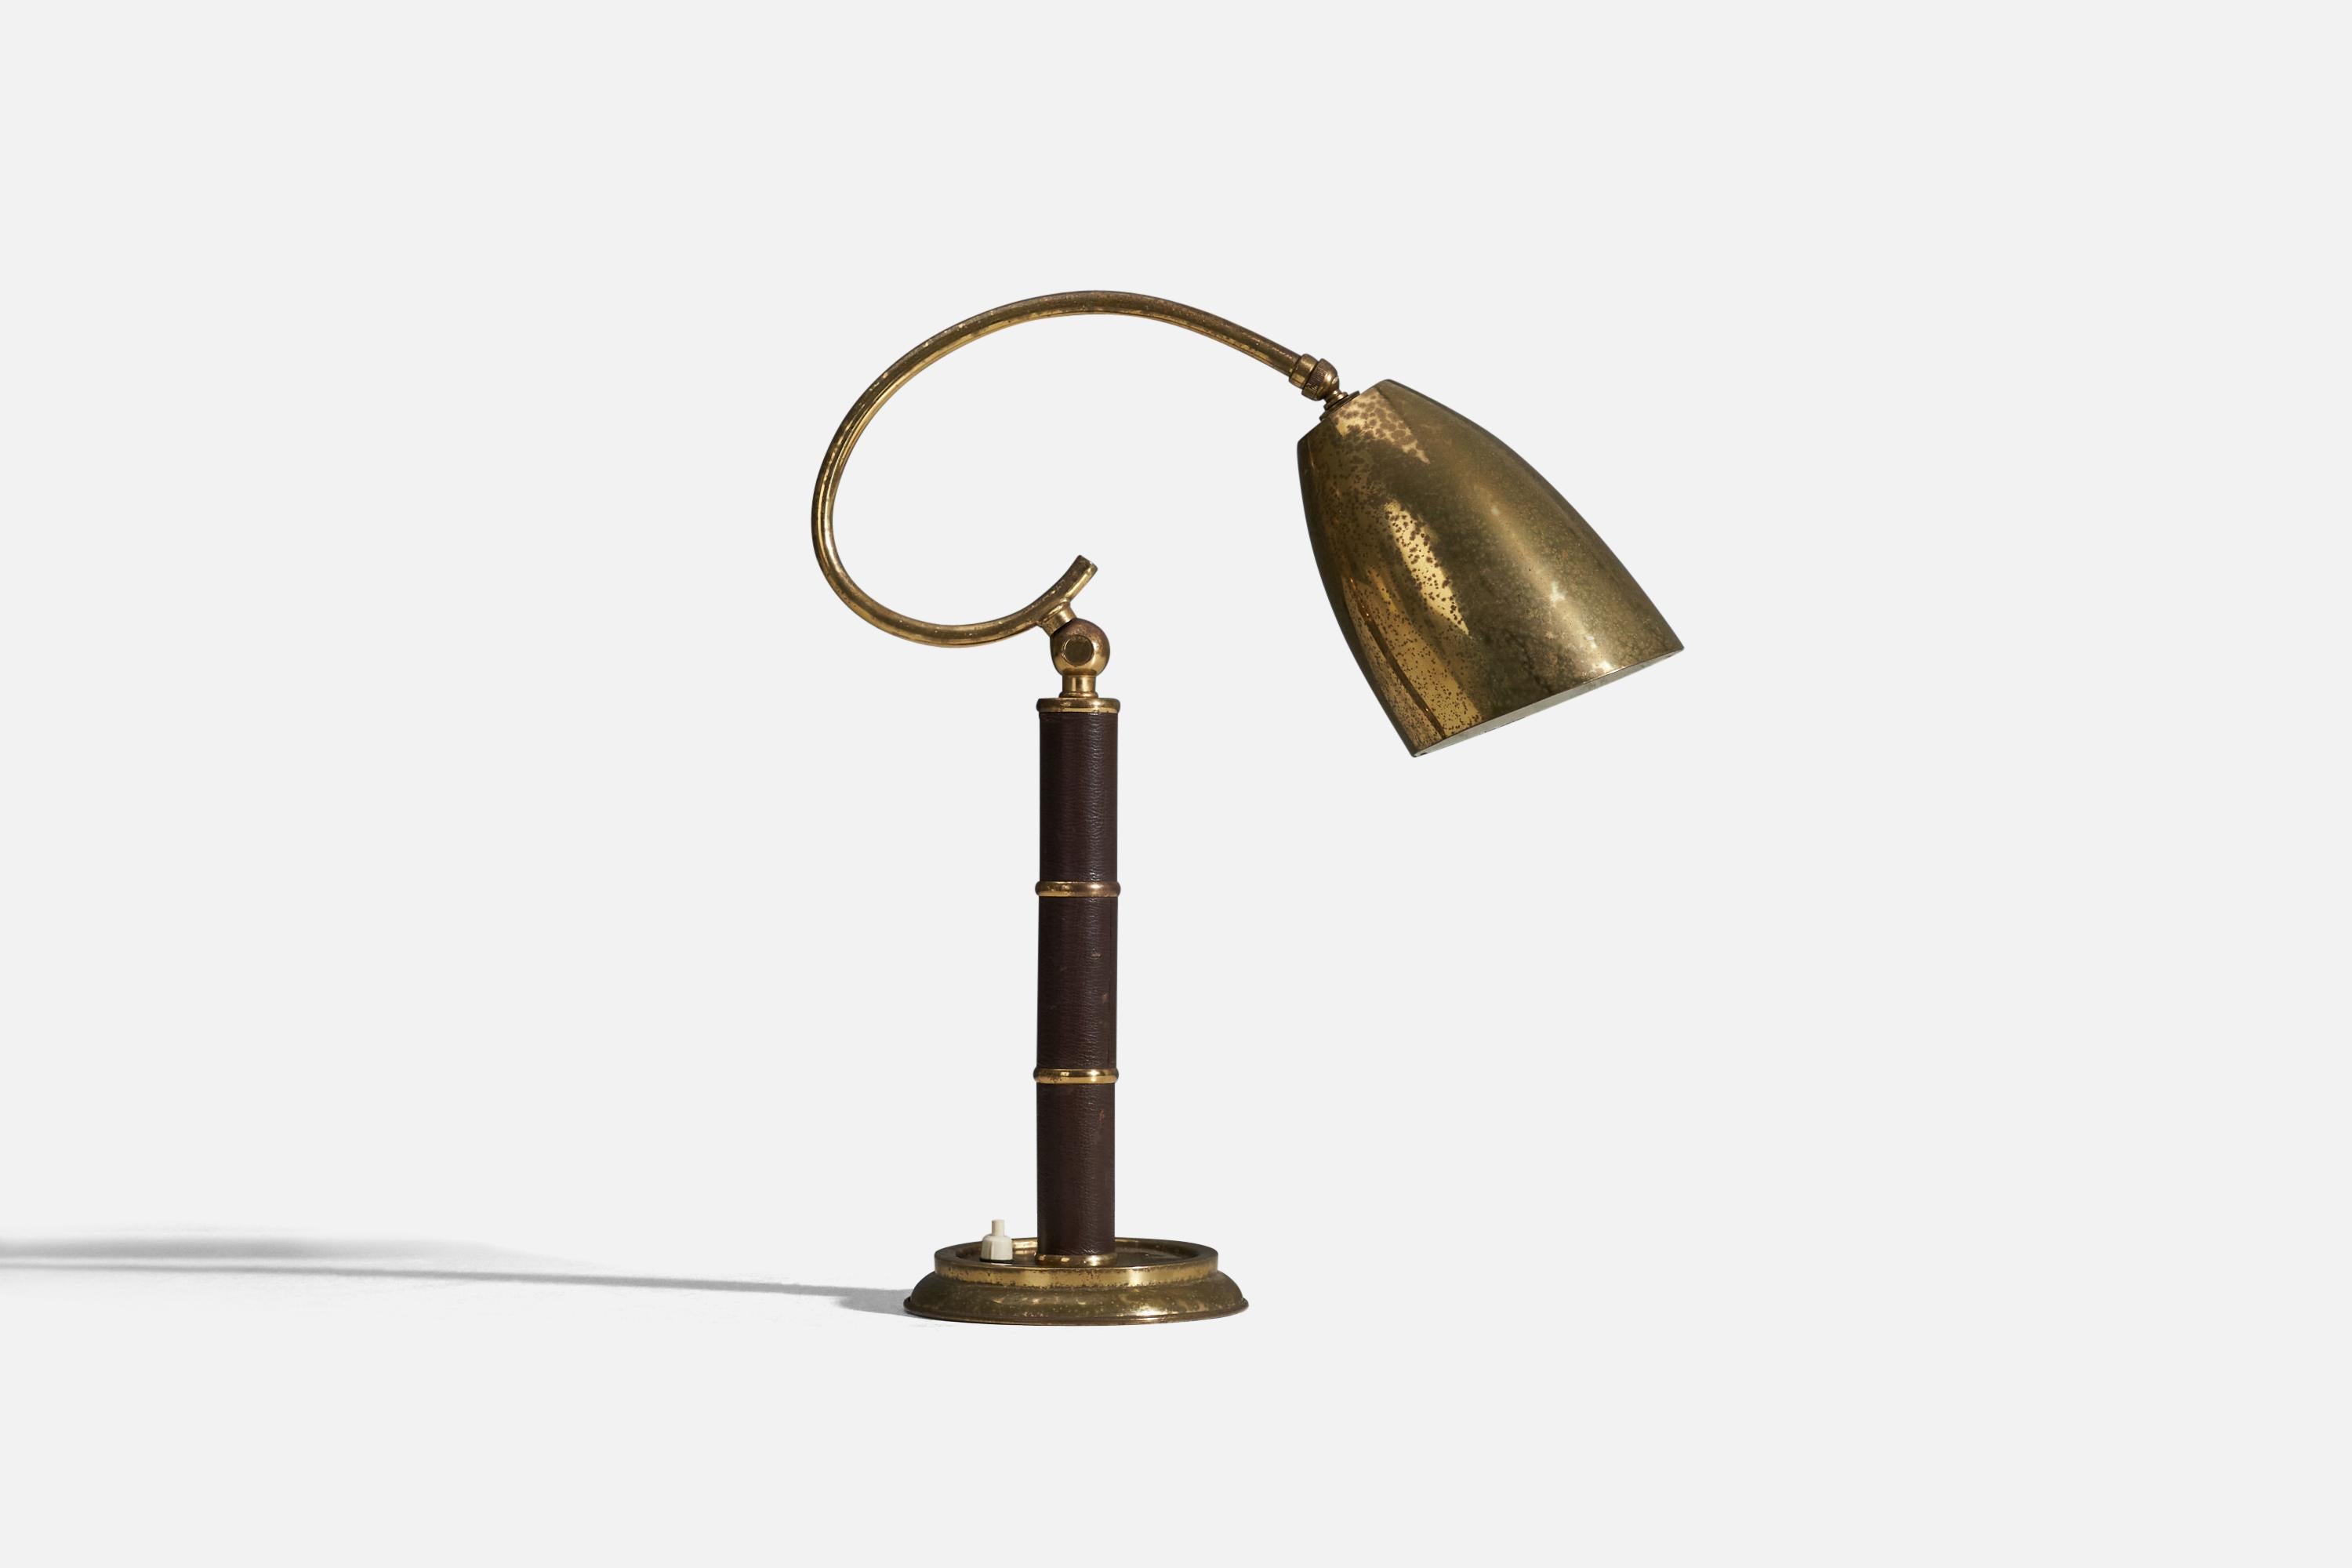 Lampe de table réglable en laiton et en cuir, conçue et produite en Italie dans les années 1940.

Dimensions variables, mesurées comme illustré dans la première image.

La douille accepte les ampoules standard E-26 à culot moyen.

Il n'y a pas